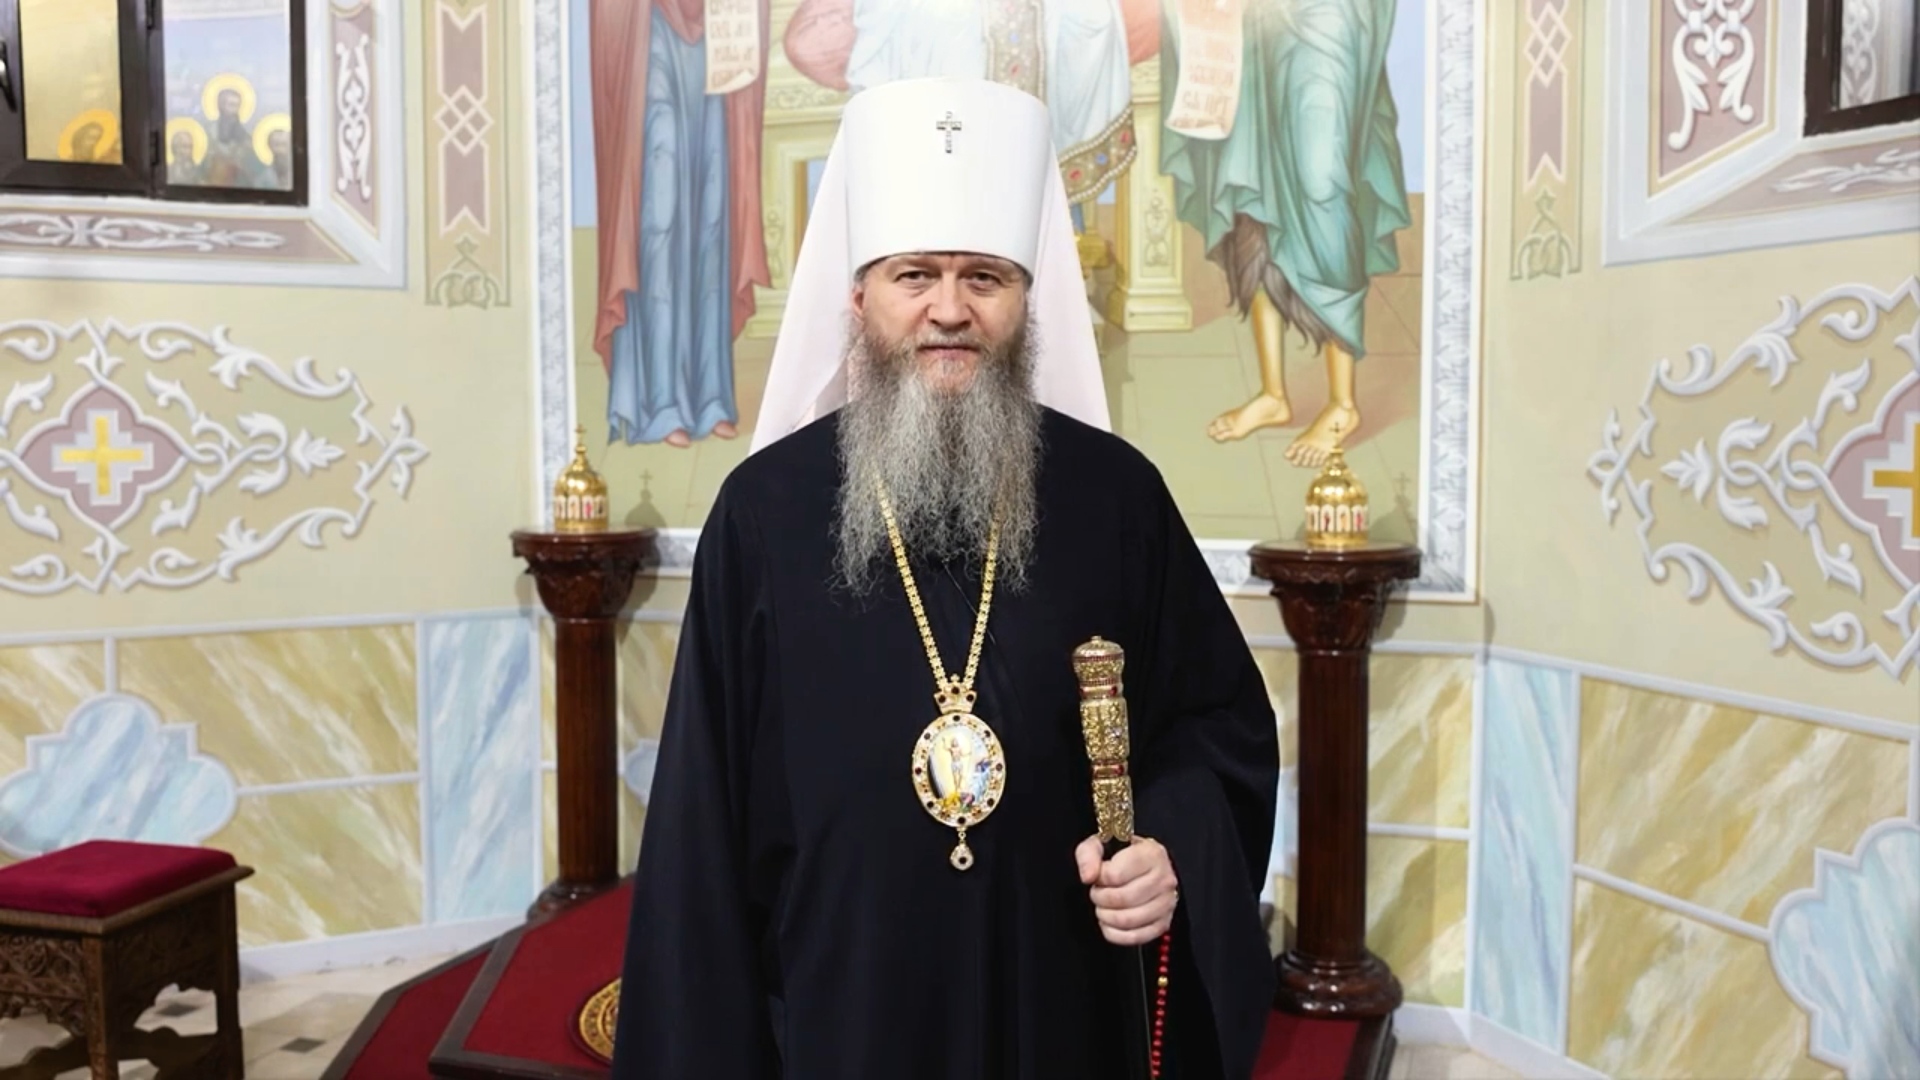 Вы сейчас просматриваете Видеопоздравление митрополита Пантелеимона с праздником Пасхи Христовой